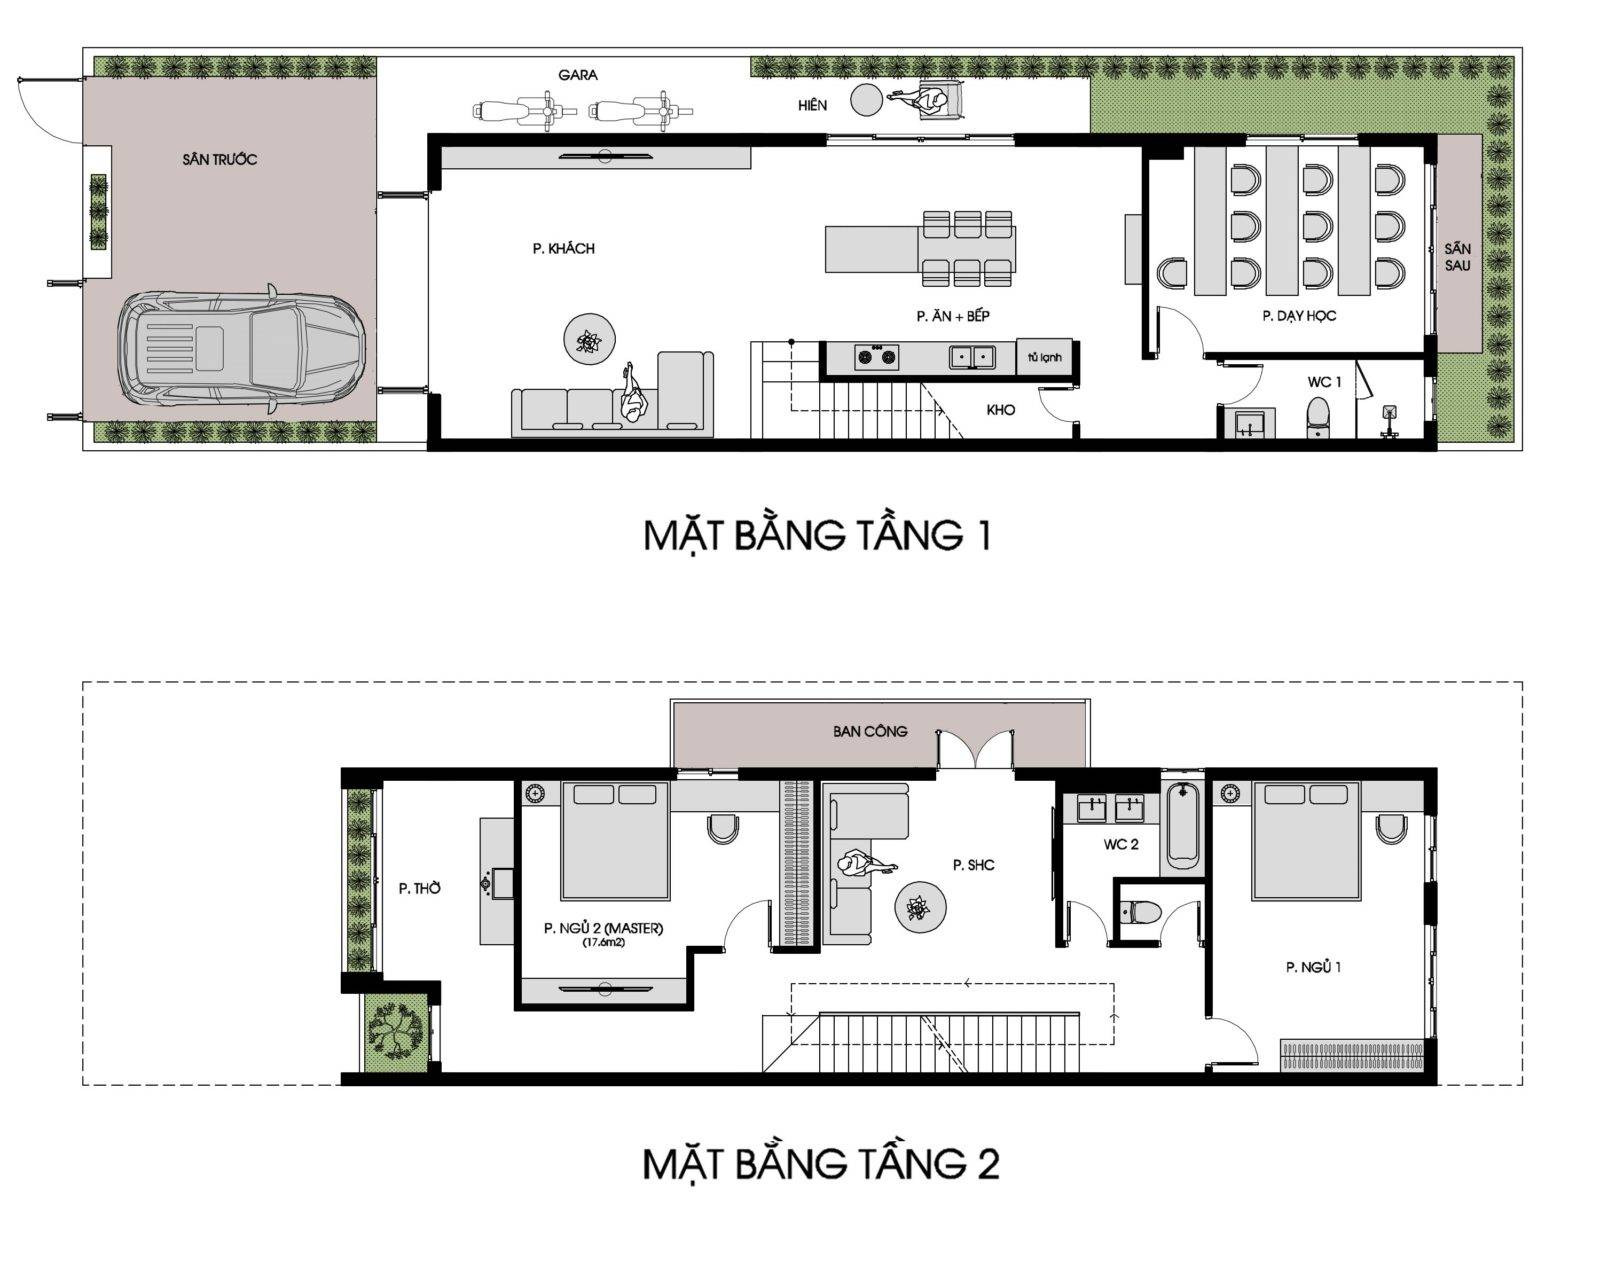 Mặt bằng tầng 1 và tầng 2 nhà ống 2 tầng 1 tum 3 phòng ngủ mang phong cách trẻ trung